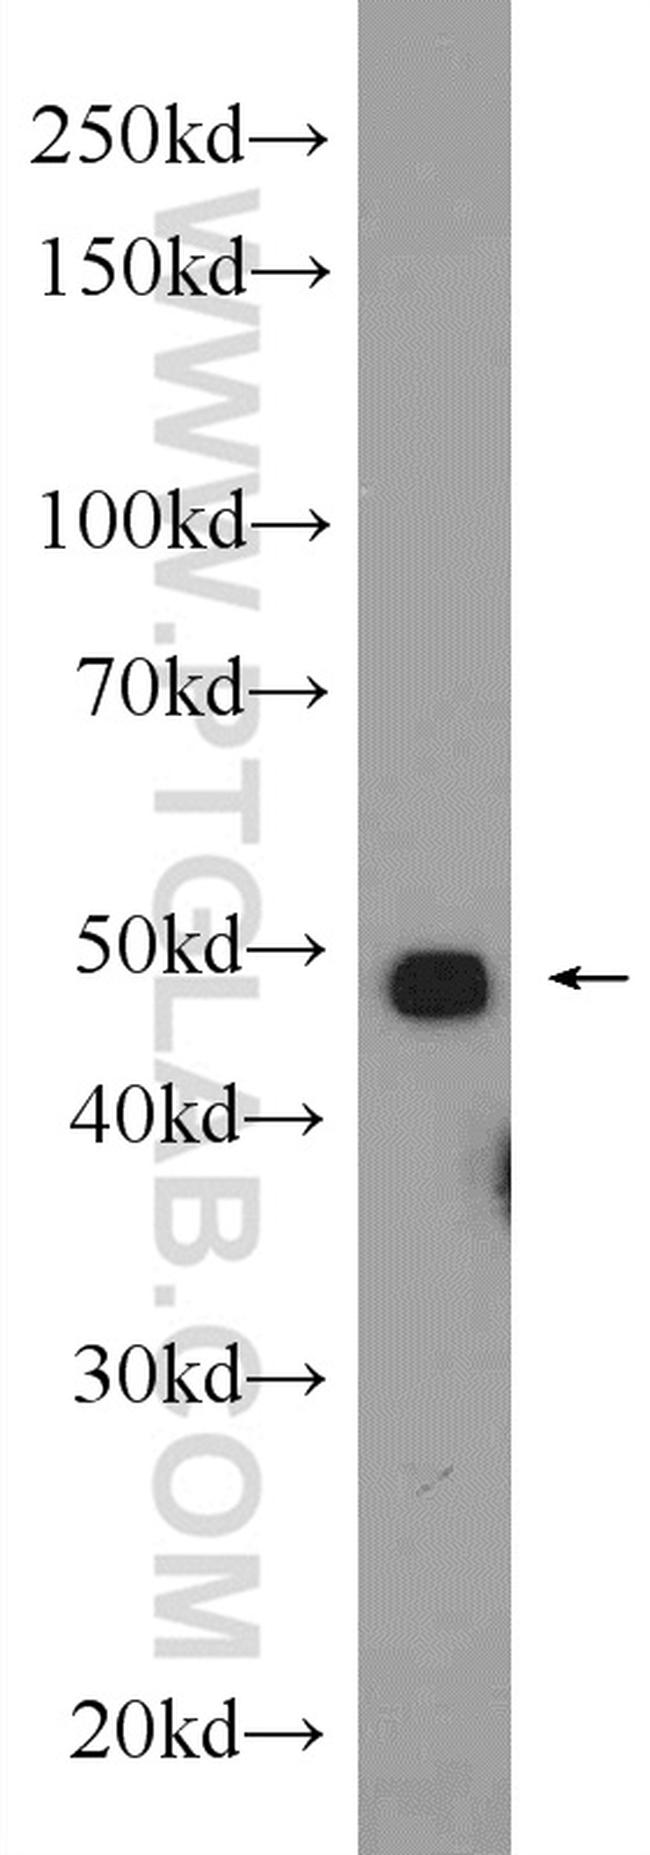 MYOD1 Antibody in Western Blot (WB)